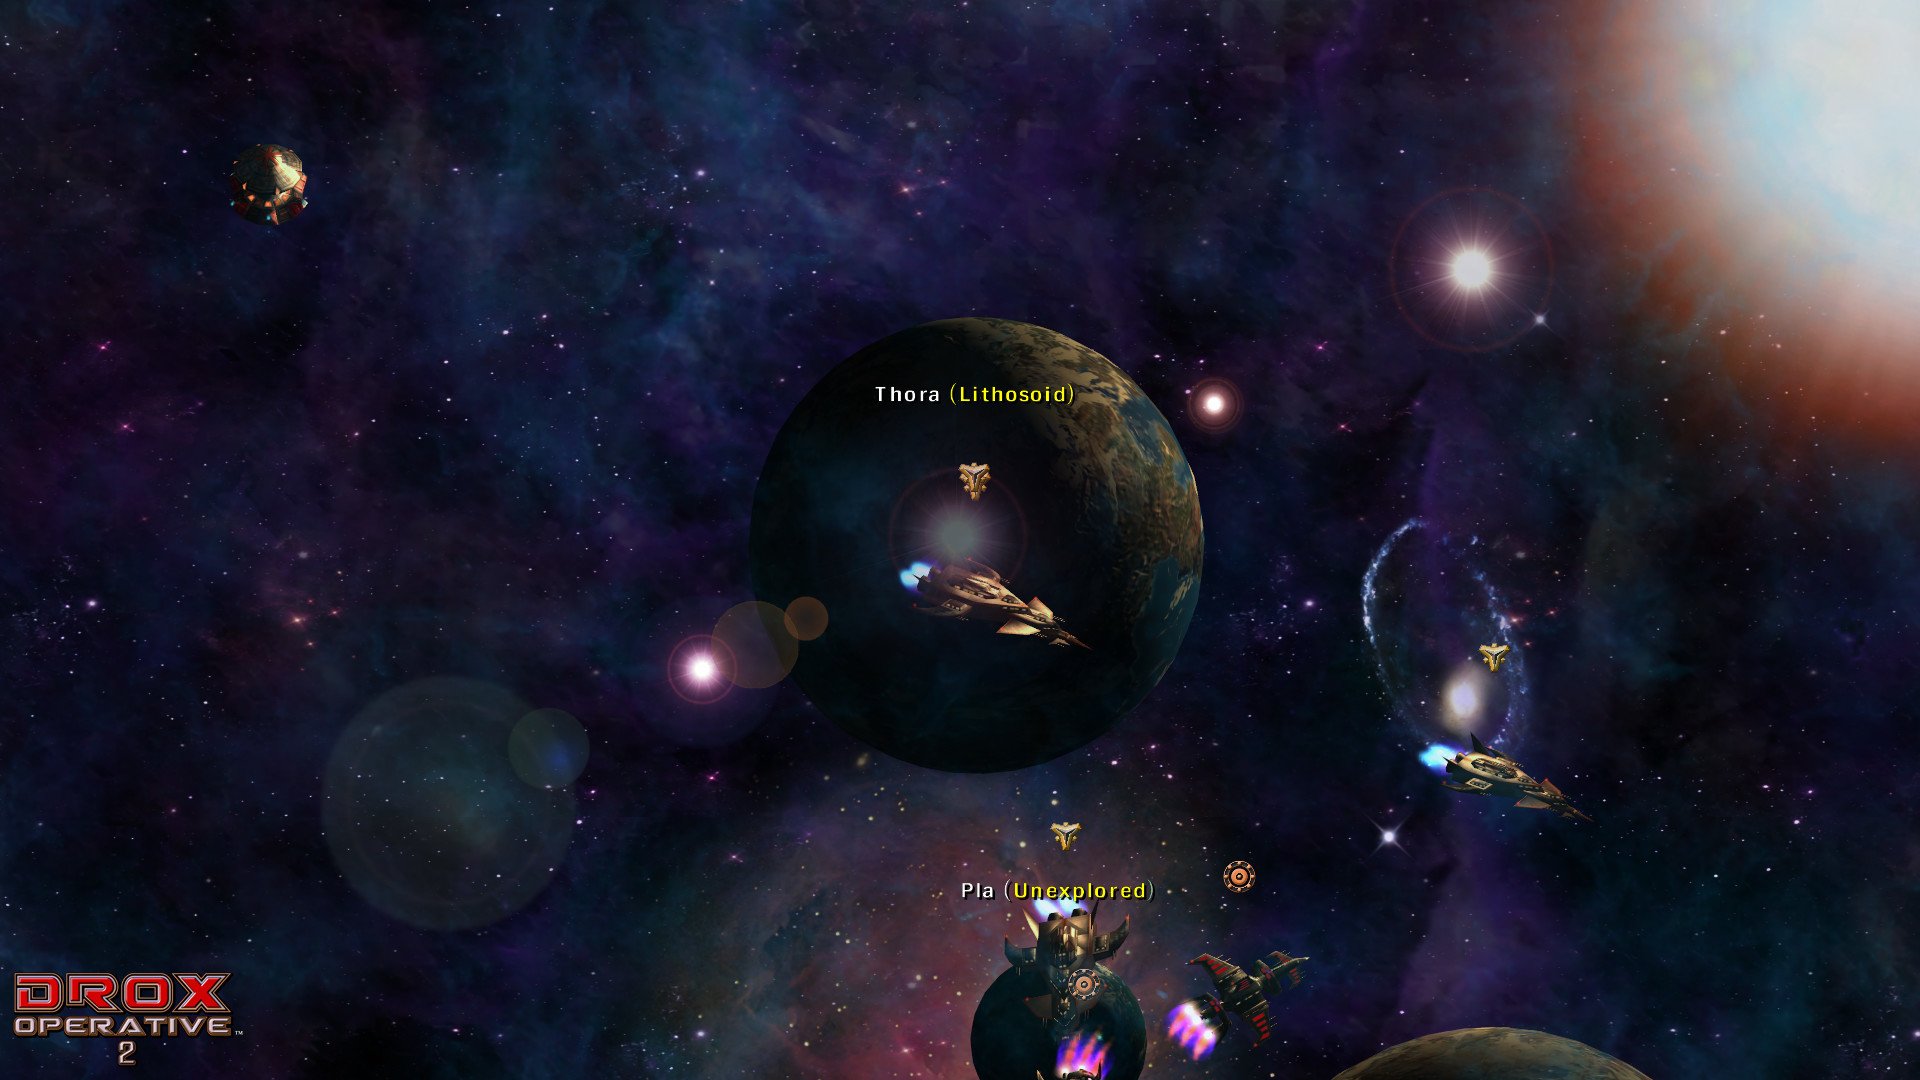 Скриншот 1 к игре Drox Operative 2 [GOG] (ENG) от R.G. GOGFAN